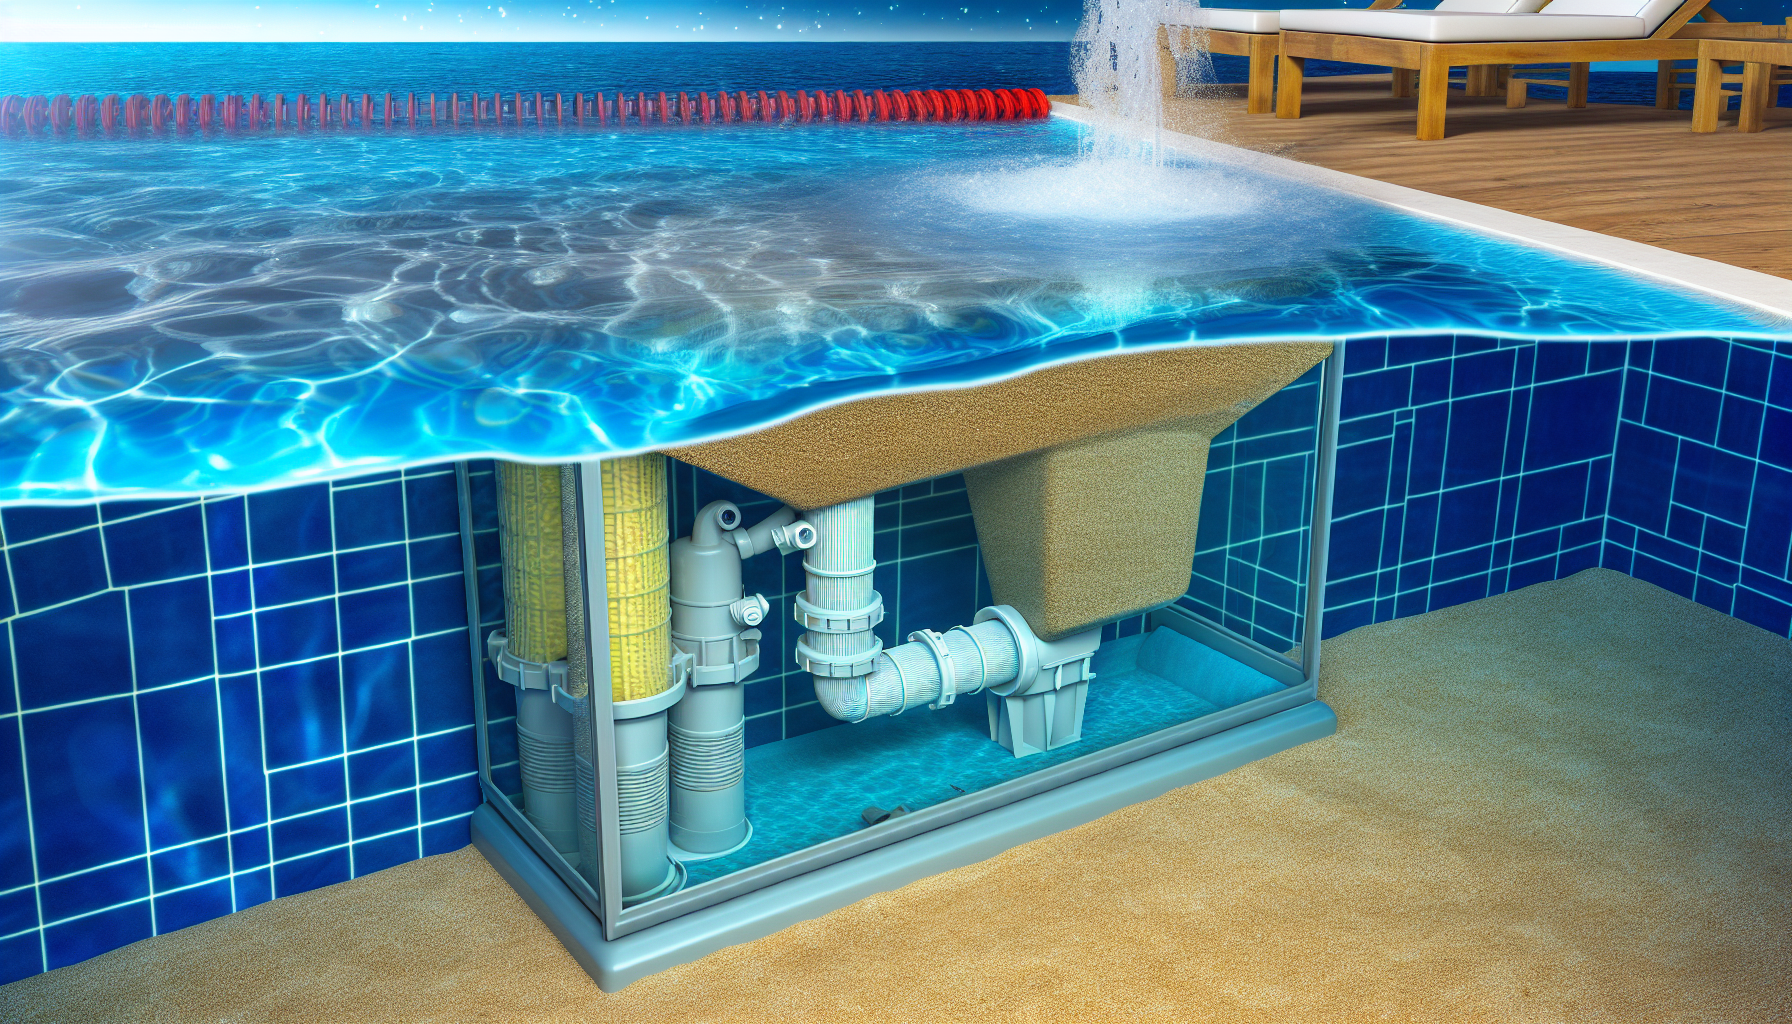 Querschnittansicht eines Swimmingpools mit Wasseroberfläche und offen gelegter Filteranlage.